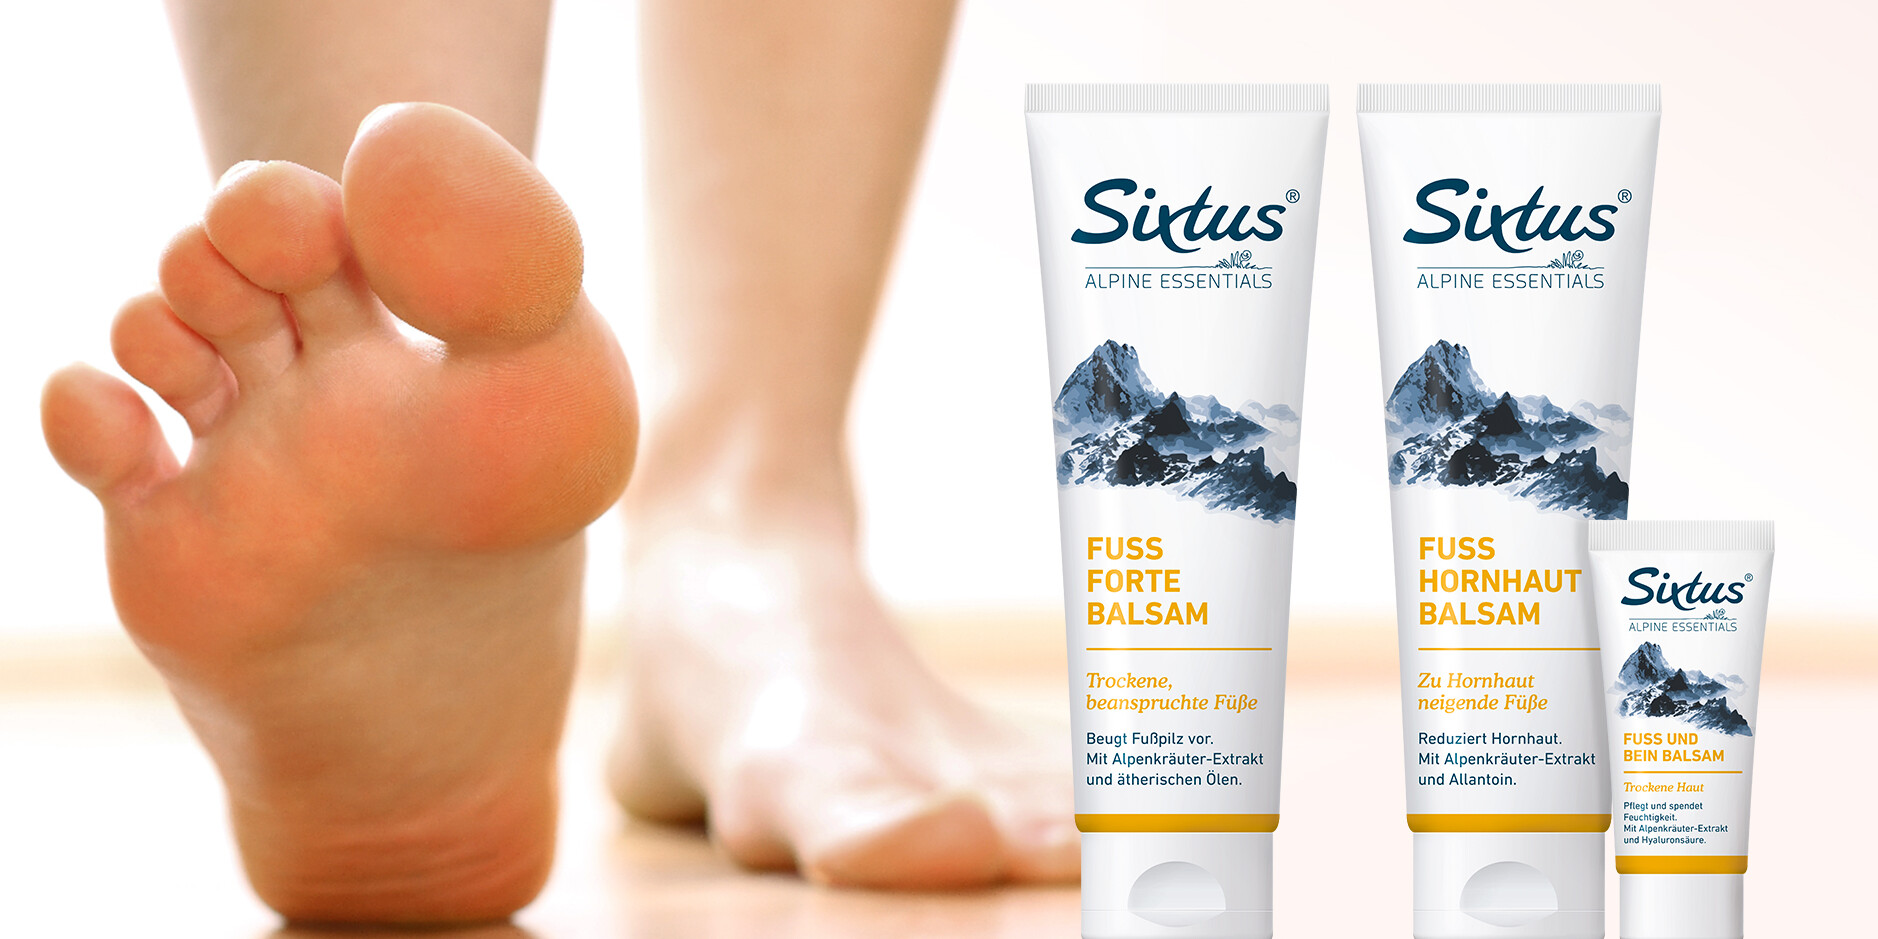 Das Foto von Sixtus Fuß-Produkten neben zwei nackten Füßen ist ein Link zur Produktkategorie Fuß.